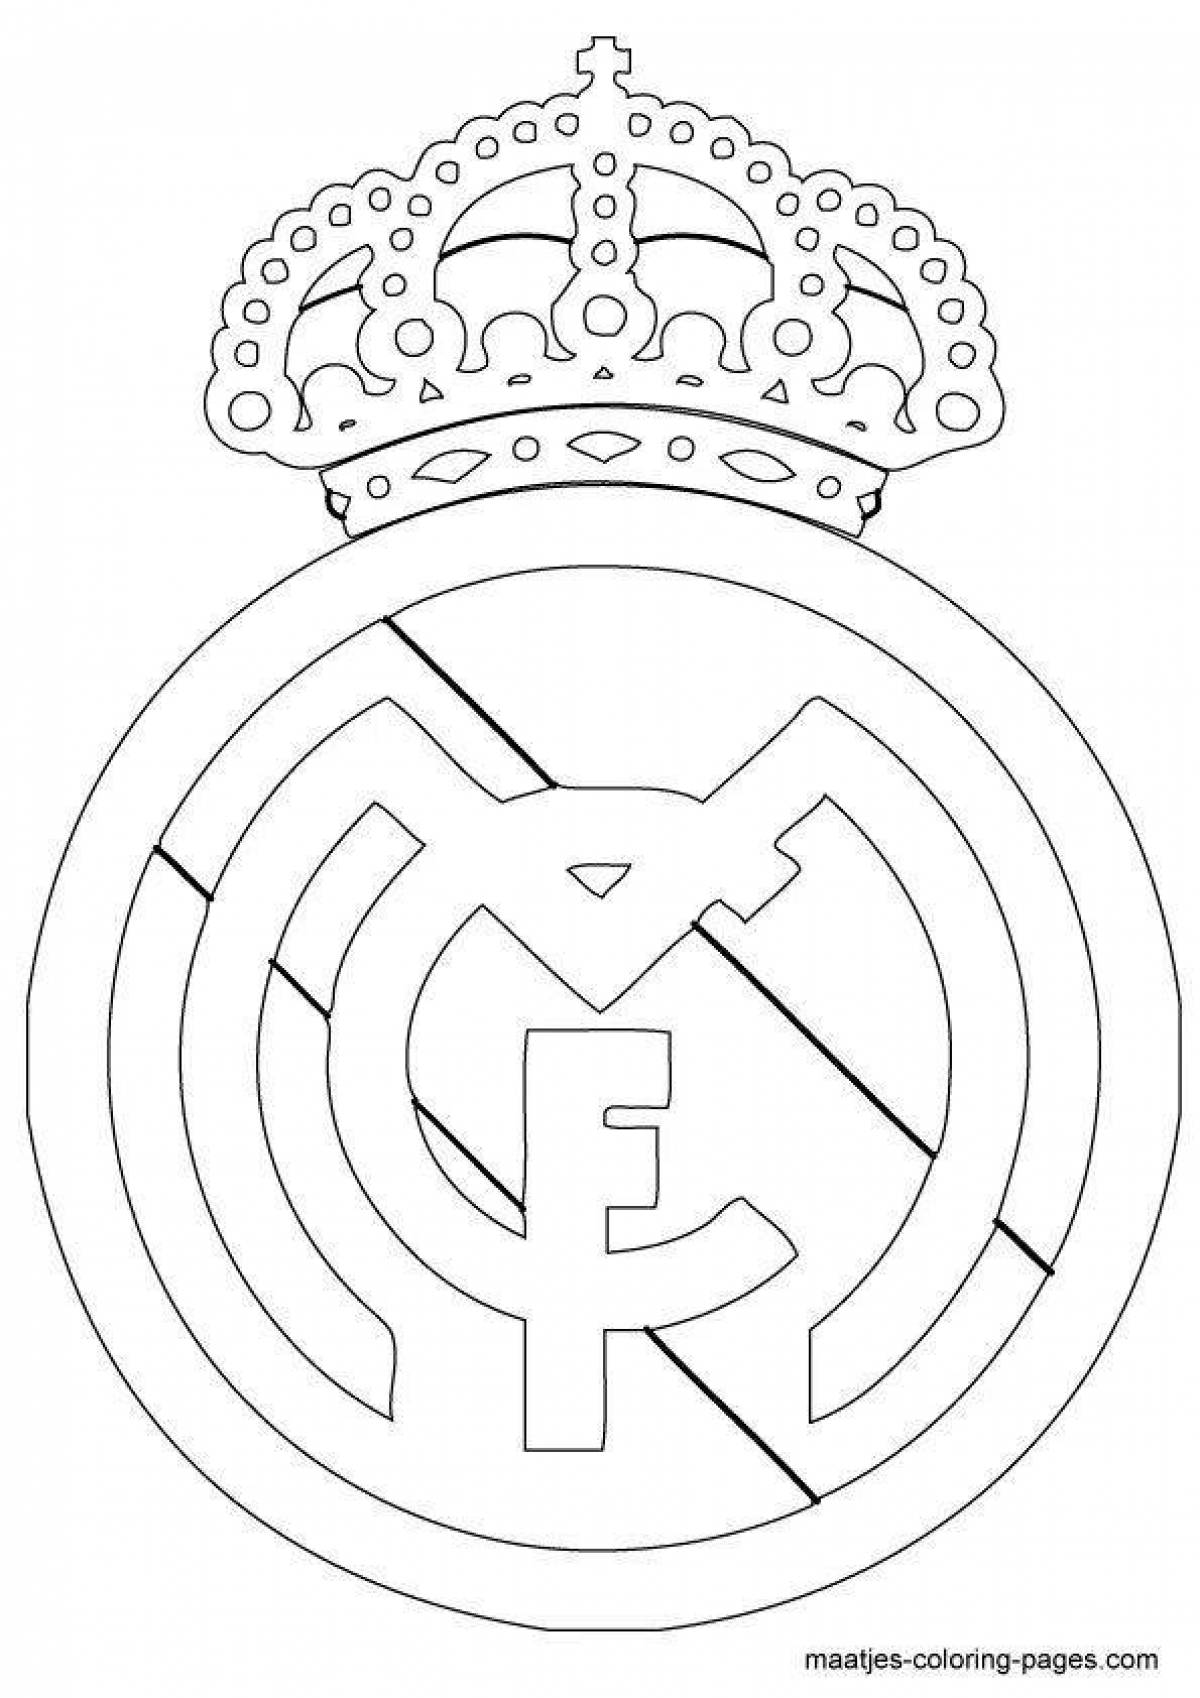 Как нарисовать футбольный клуб Реал Мадрид